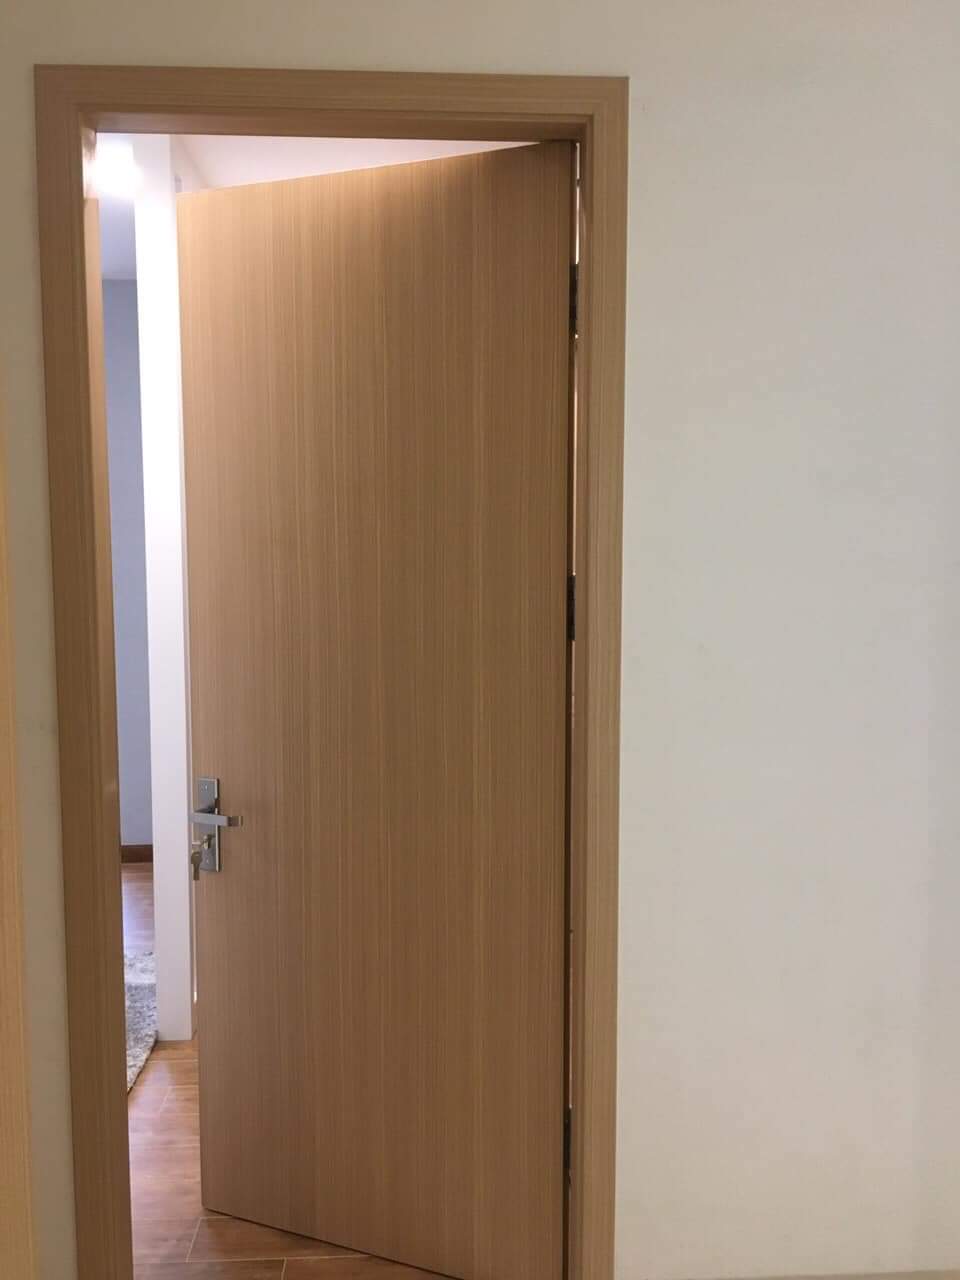 Mẫu nẹp khuôn cửa gỗ đơn giản